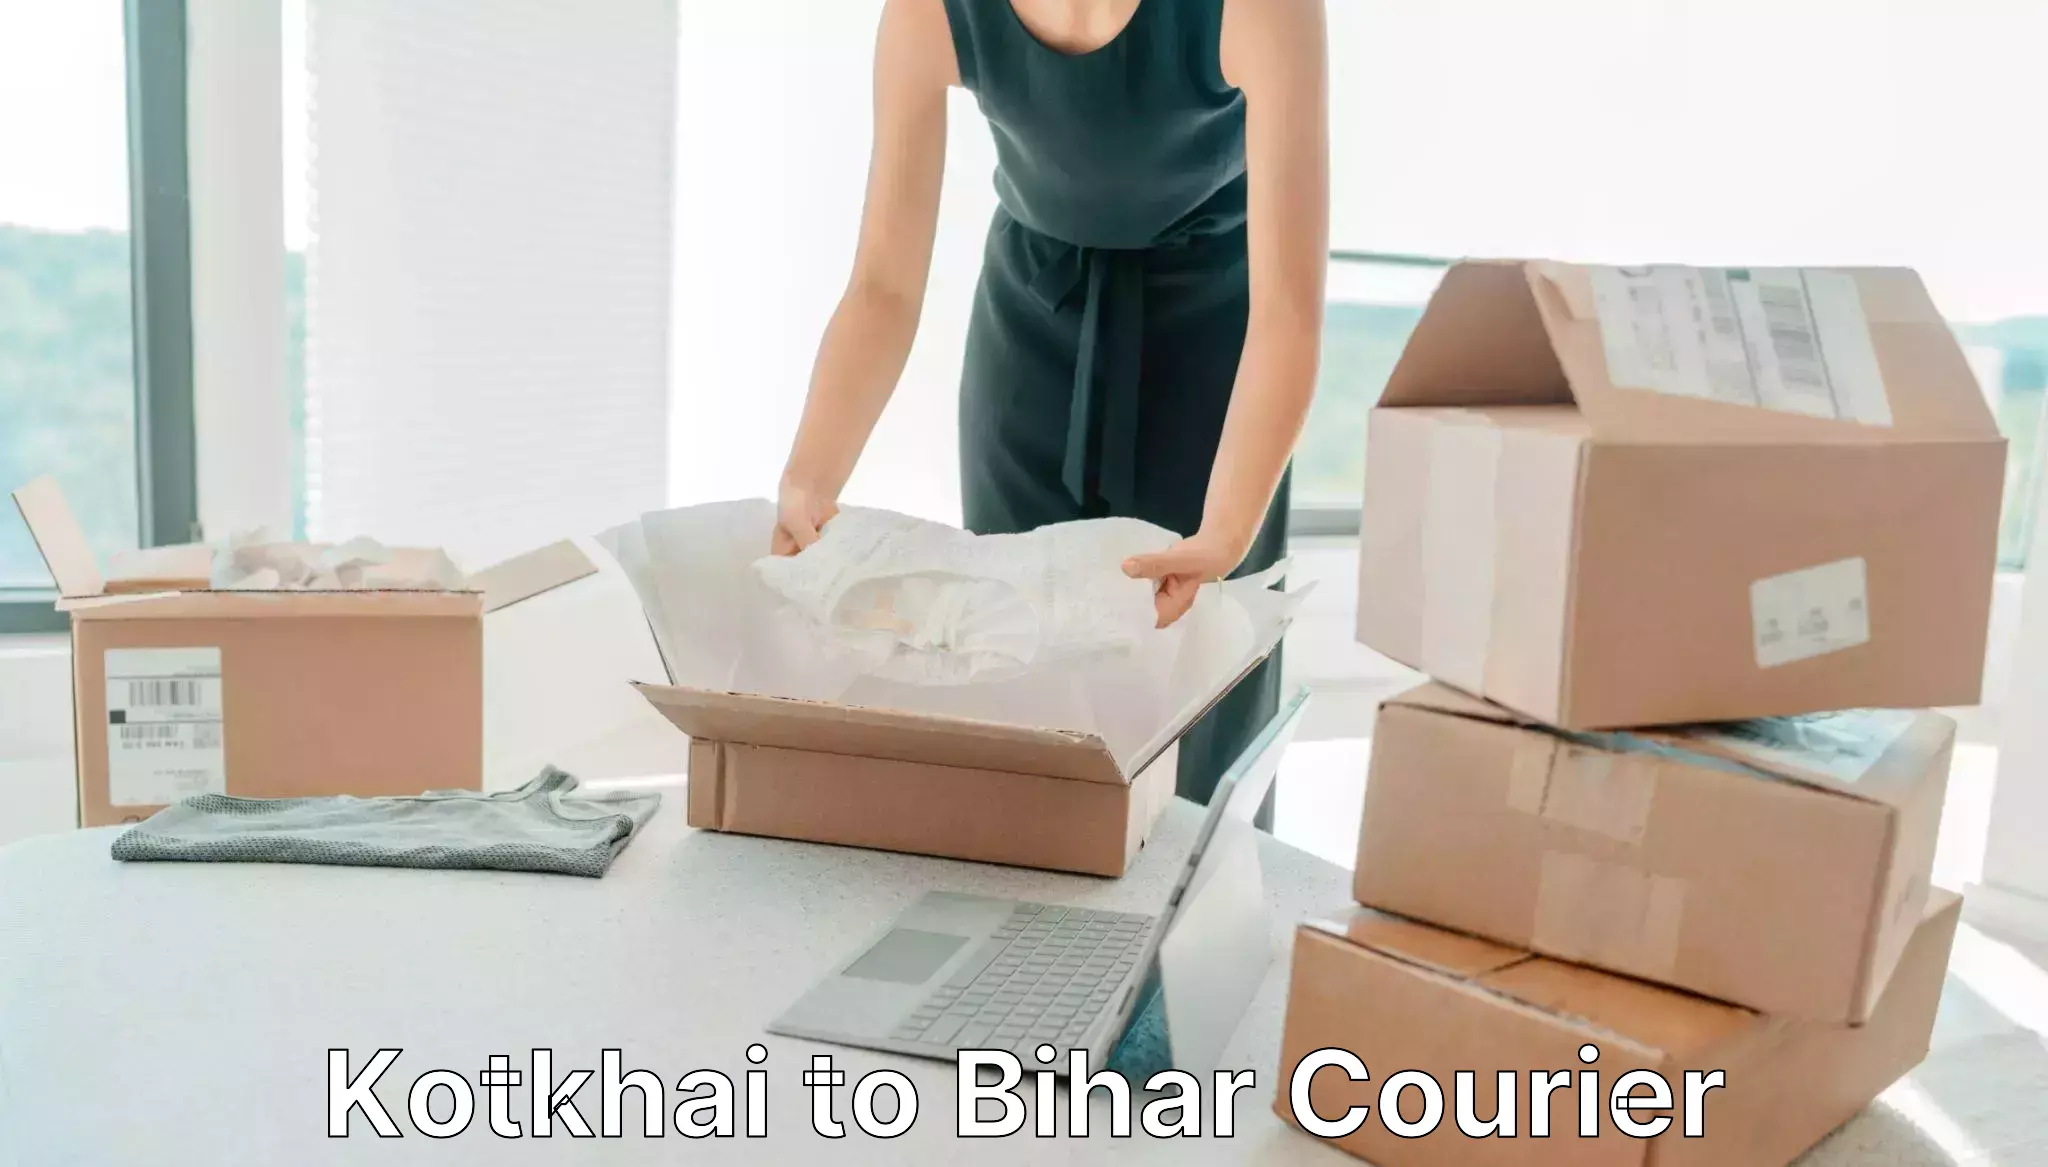 Customer-focused courier Kotkhai to Bikramganj